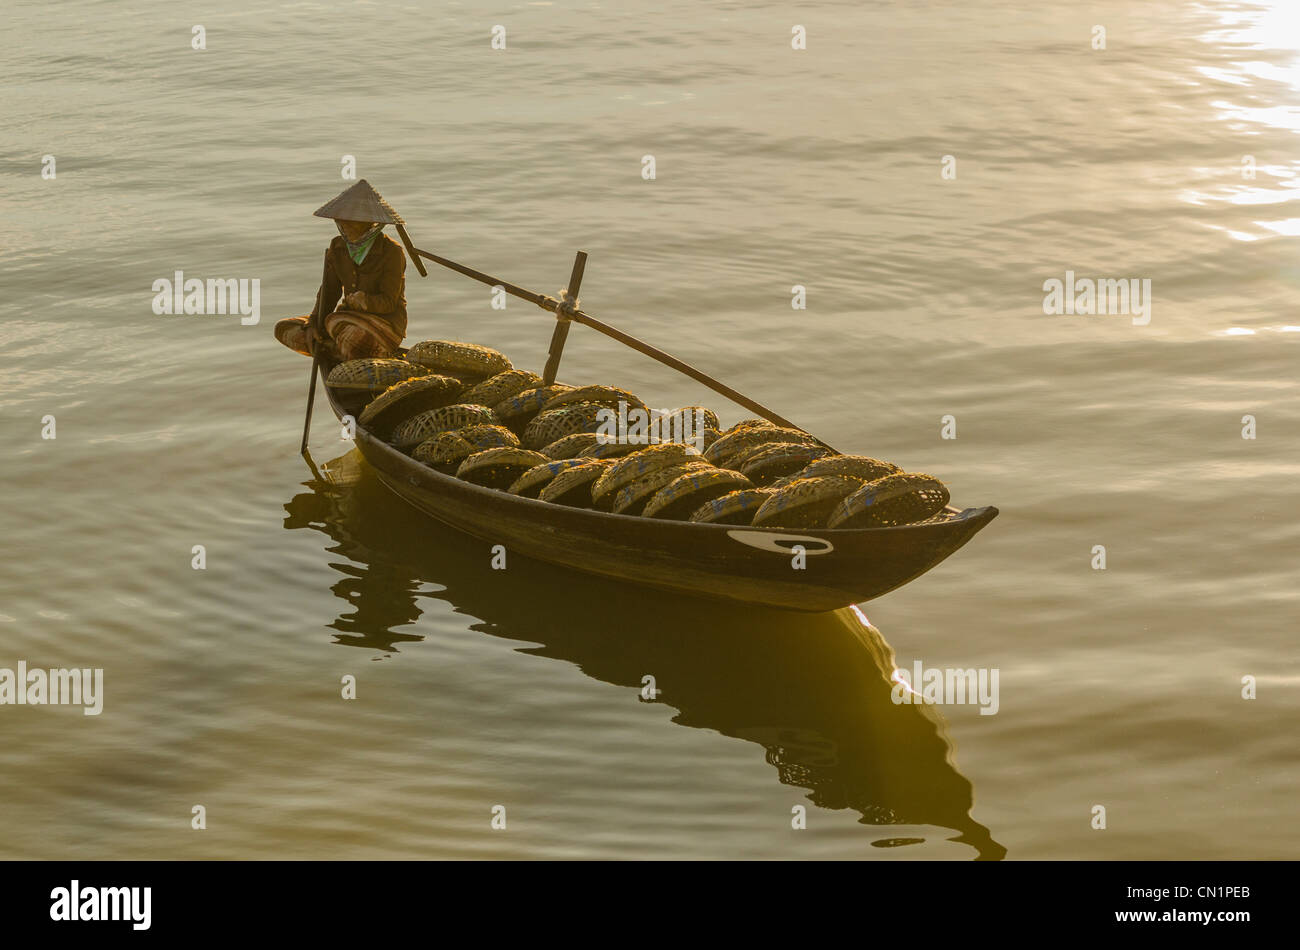 Vietnamienne en chapeau conique lignes remplies de paniers de pêche Bateau Banque D'Images